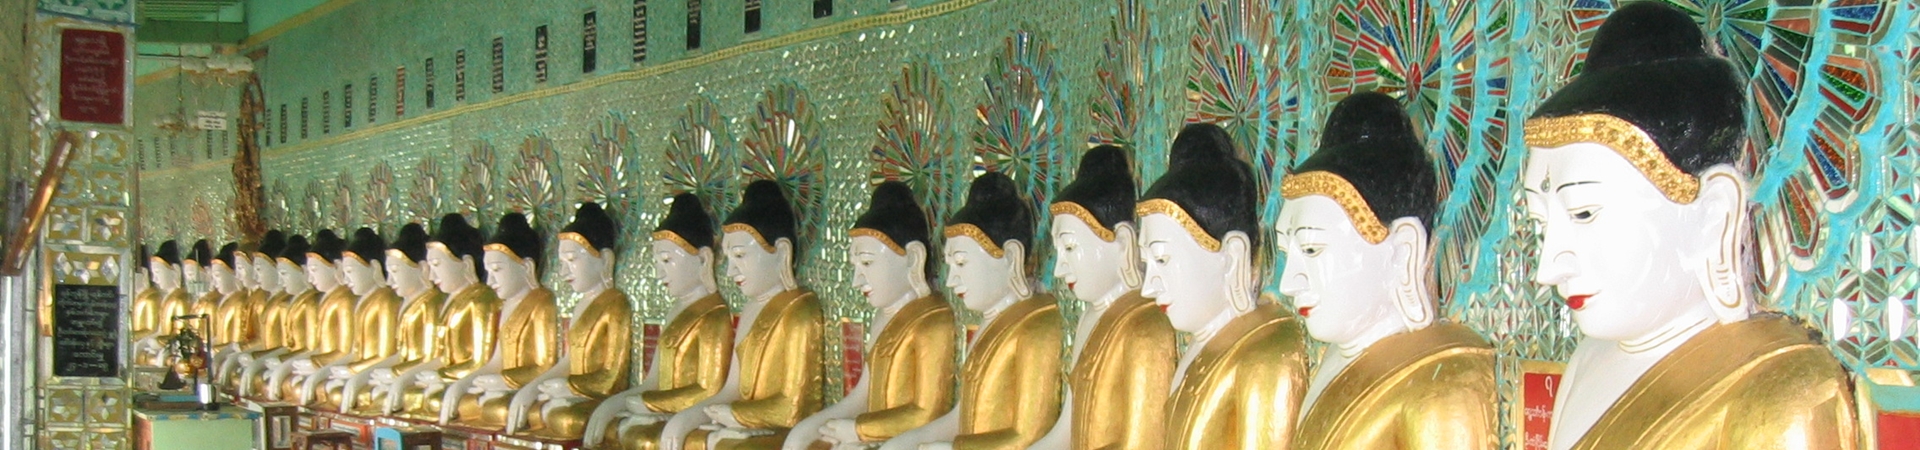 Image of Mandalay’s Royal Capitals